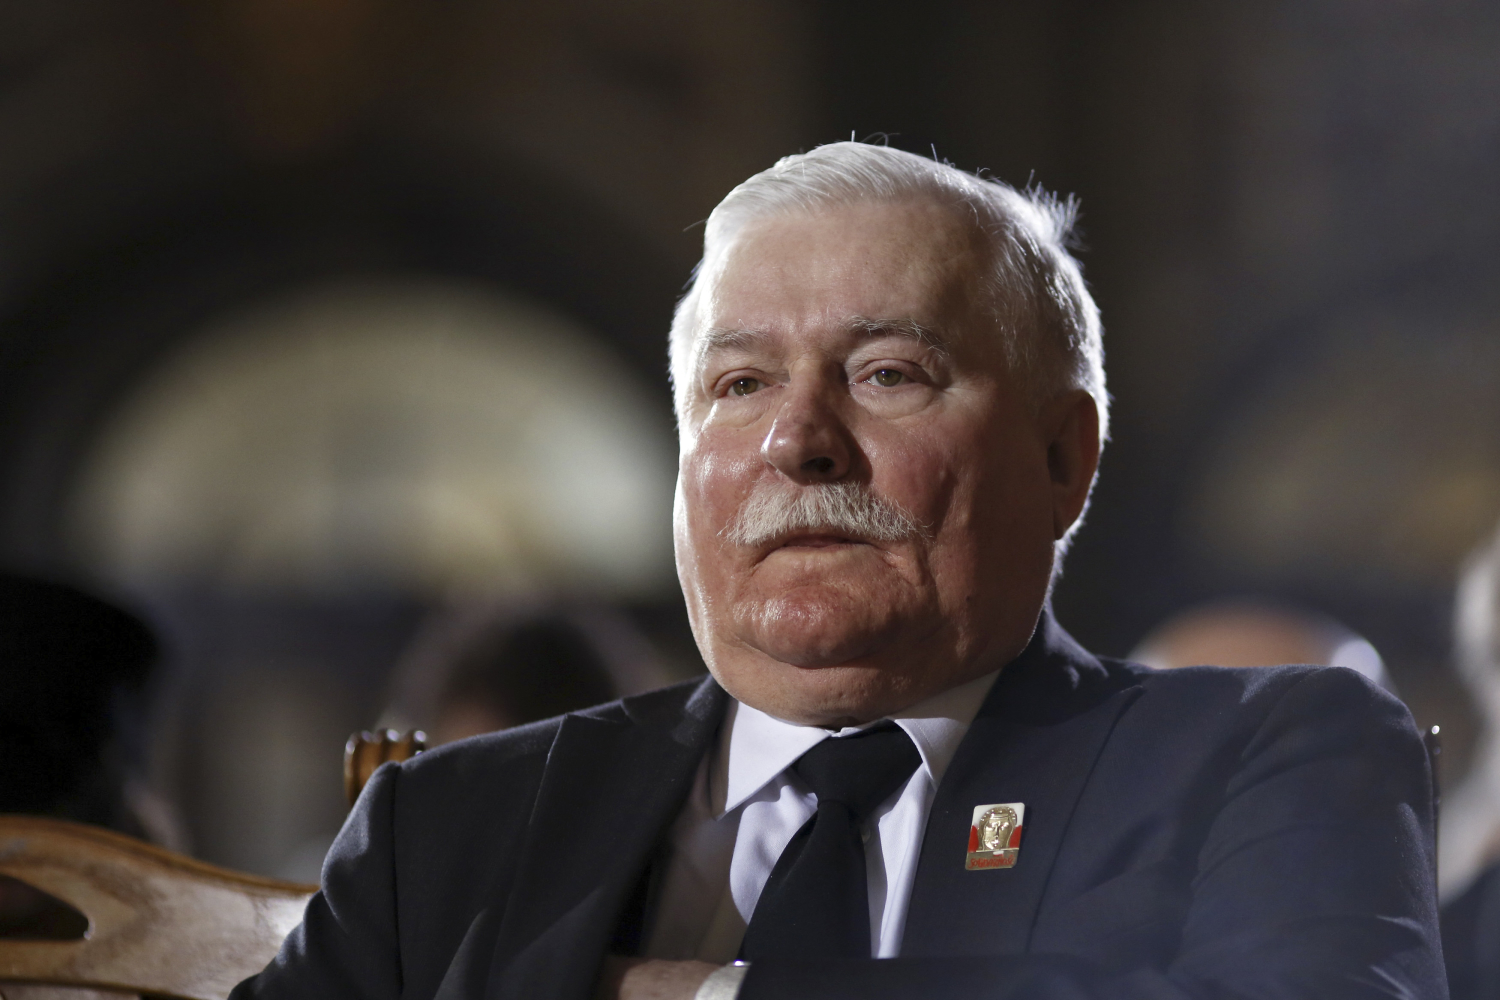 Acusan al expresidente polaco Lech Walesa de haber sido espía comunista